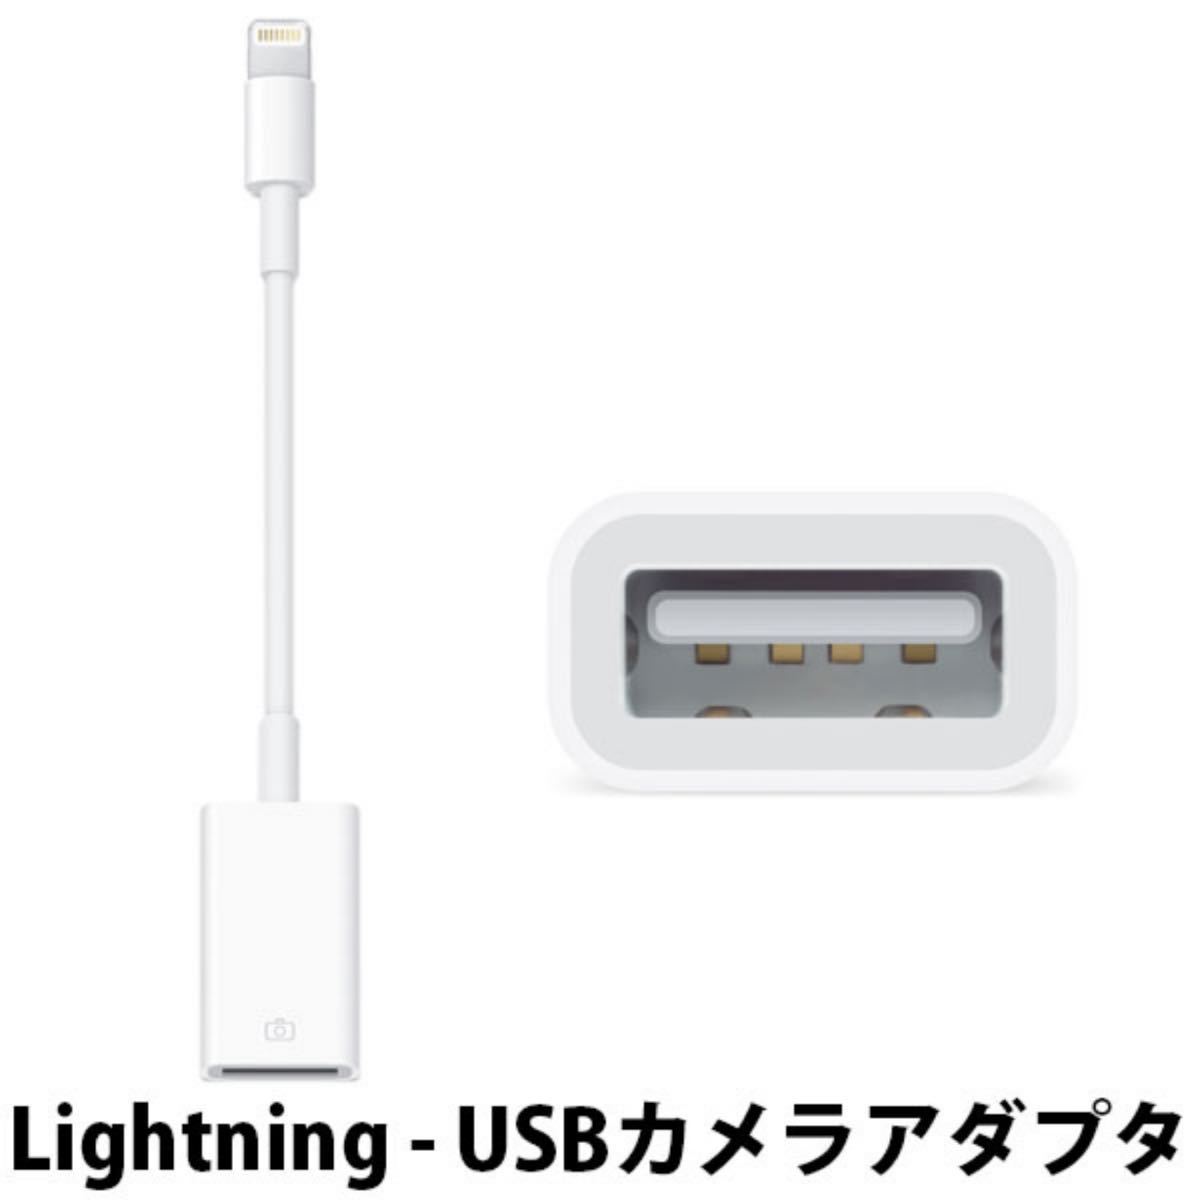 Apple Lightning - USB カメラアダプタ 